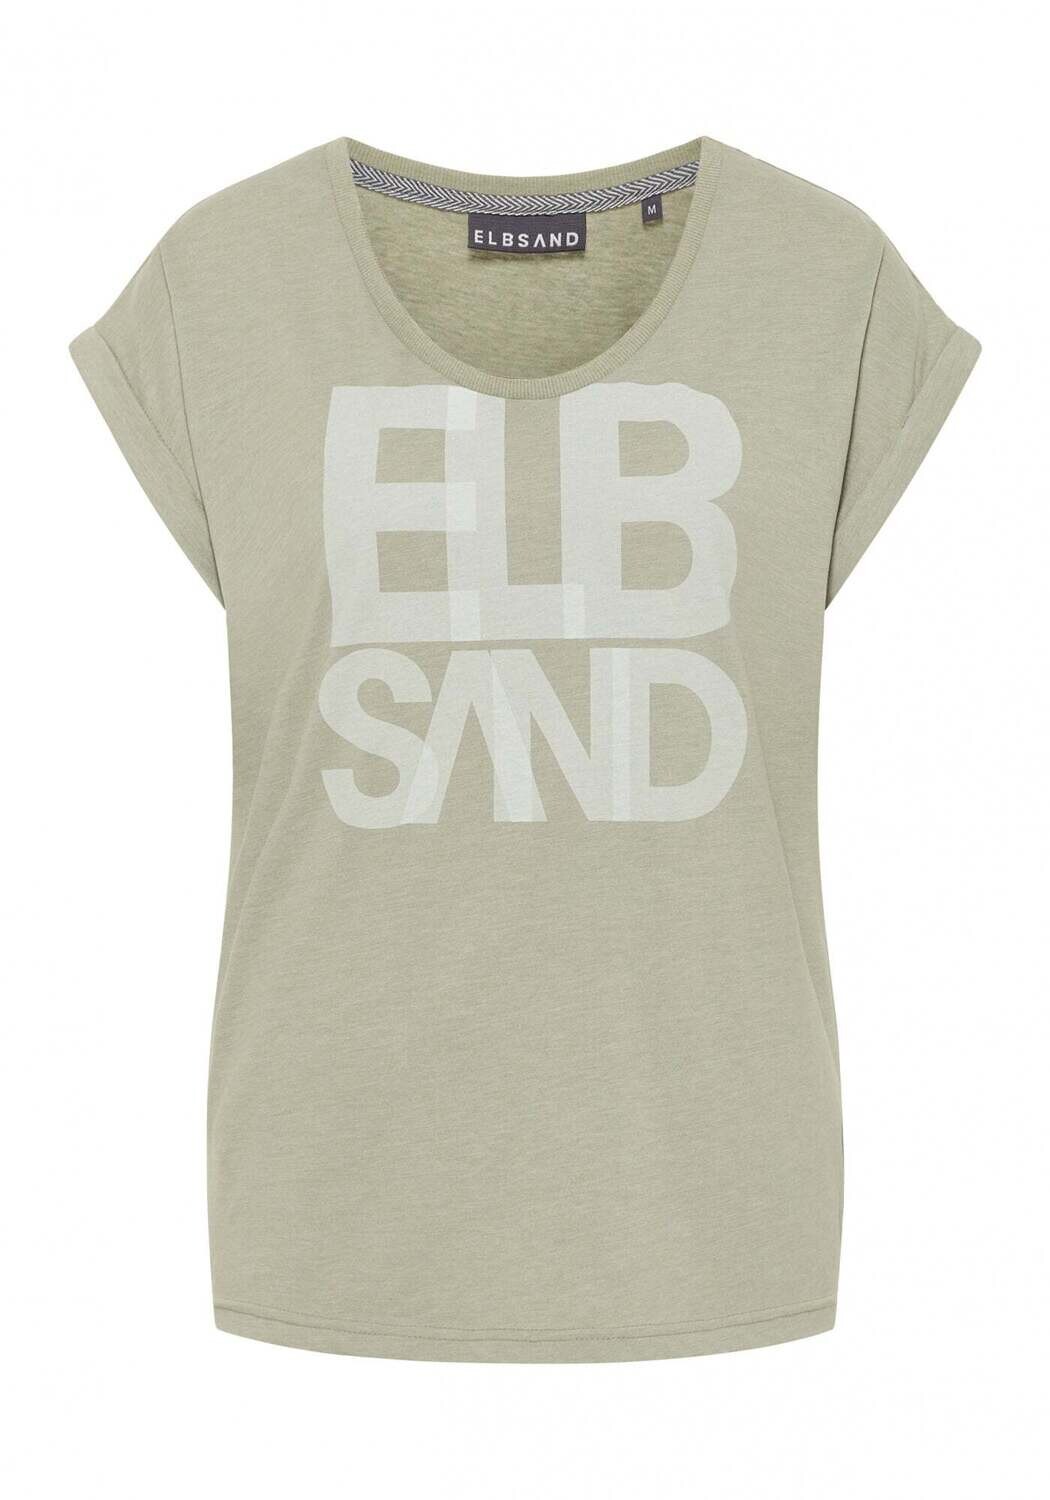 Elbsand Eldis T-Shirt grün, Grösse: S